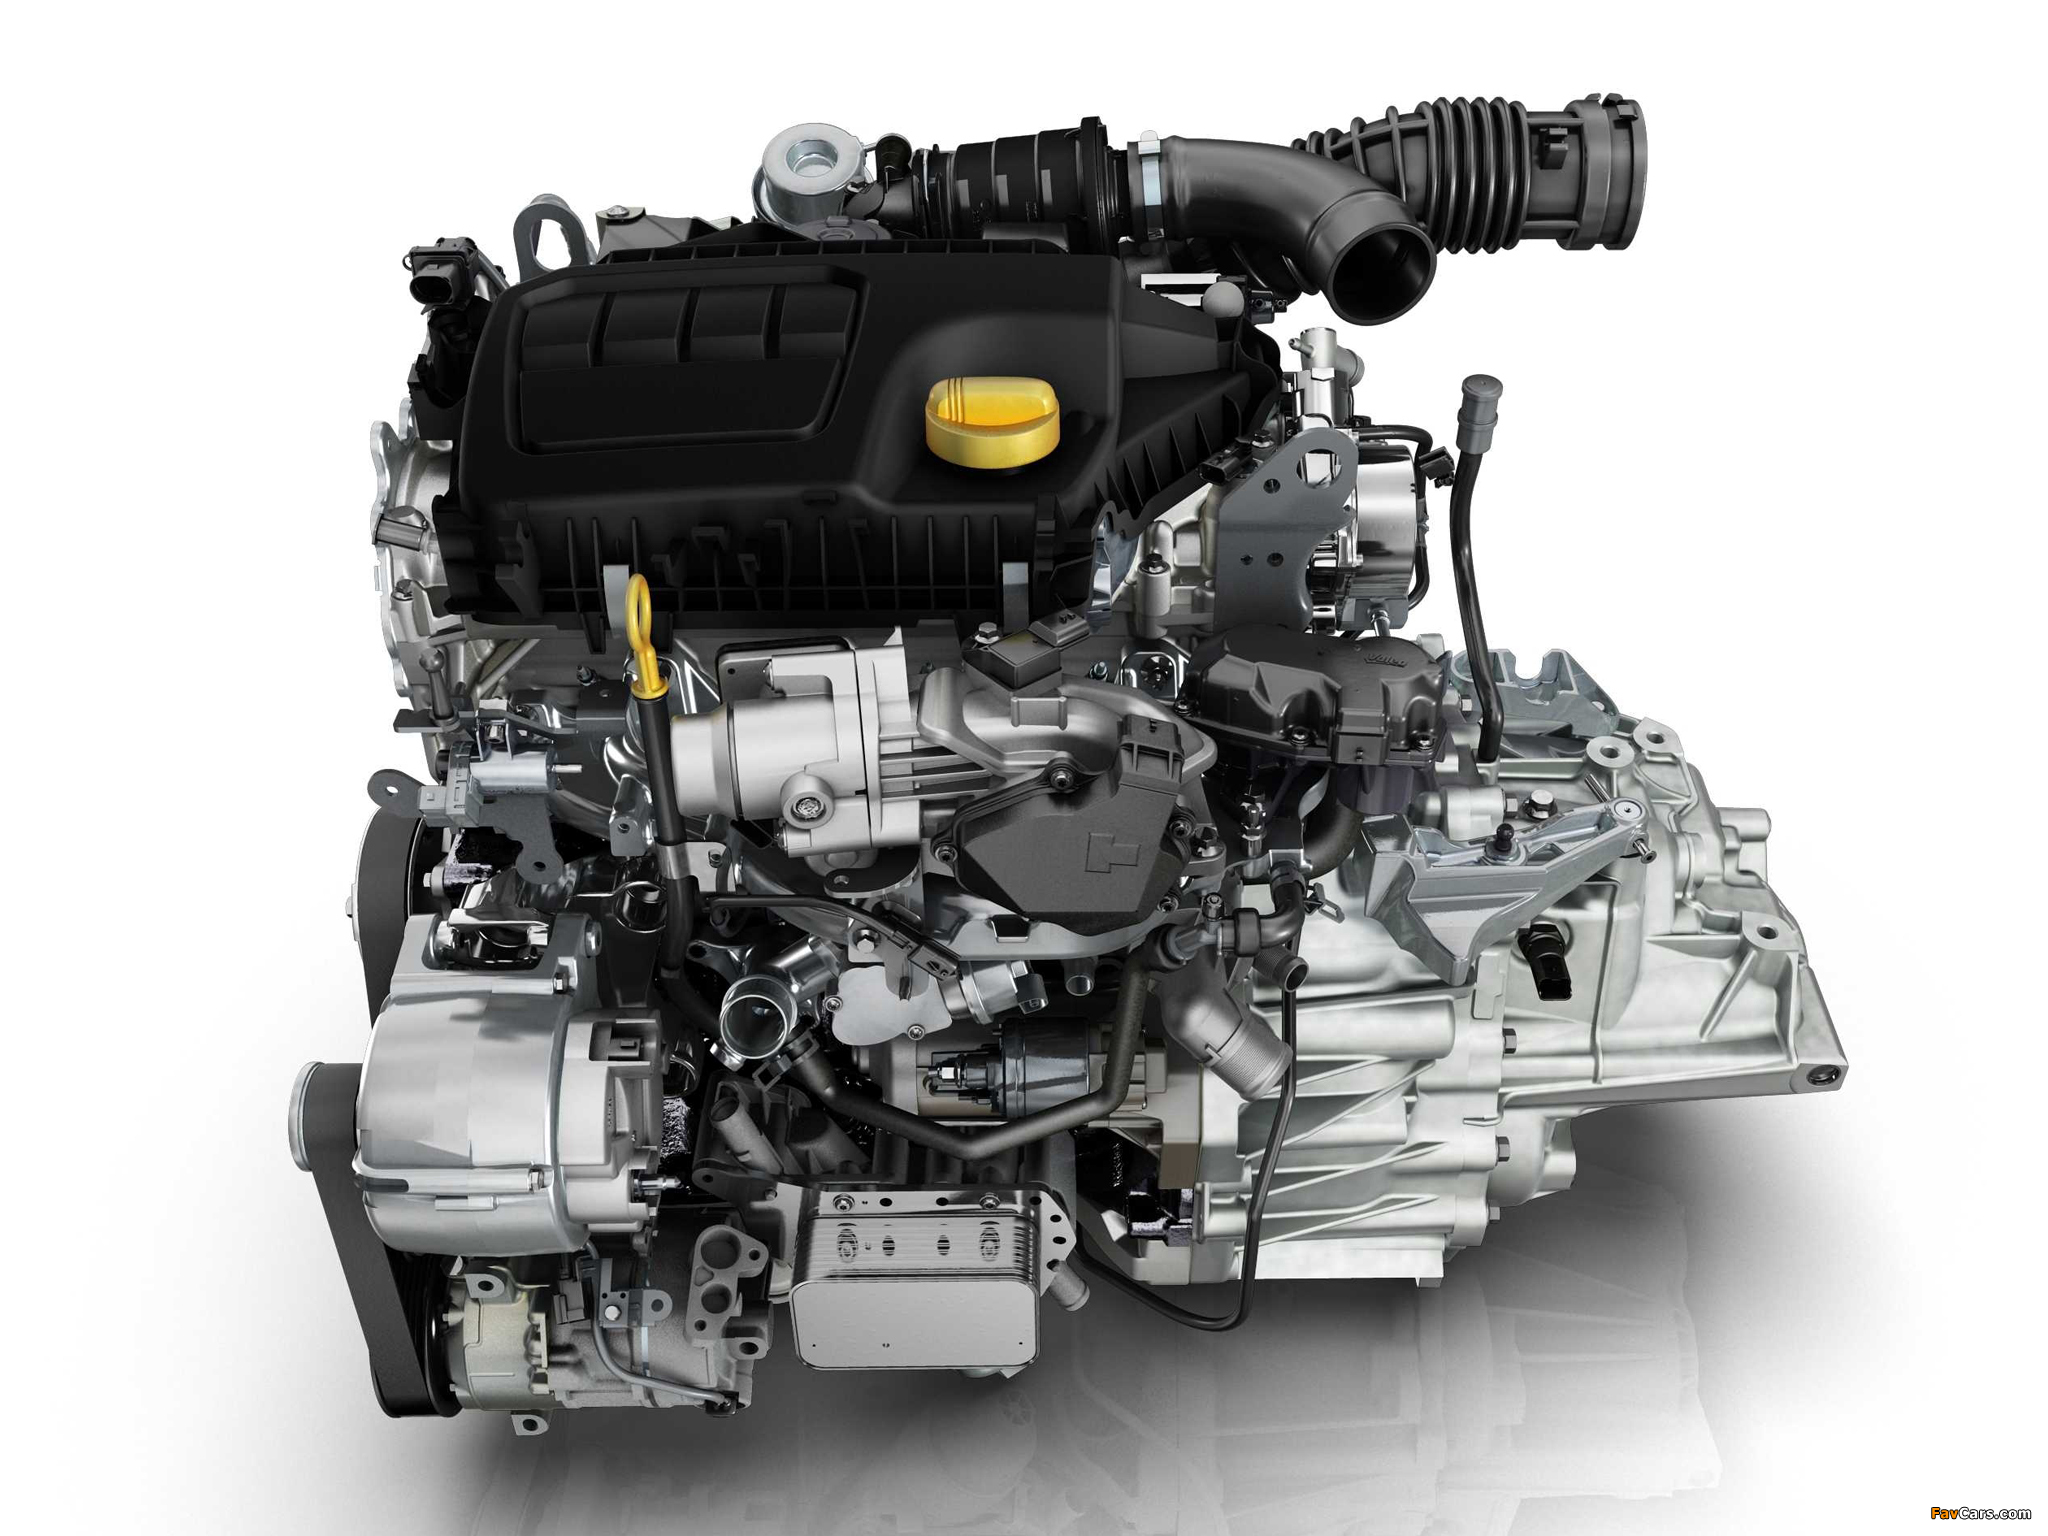 Двигатели б у рено. R9m 1.6 DCI 130л.с. Renault r9m 1.6 DCI. Nissan x-Trail двигатель m9r. R9m 1.6 DCI дизельный турбированный 130.